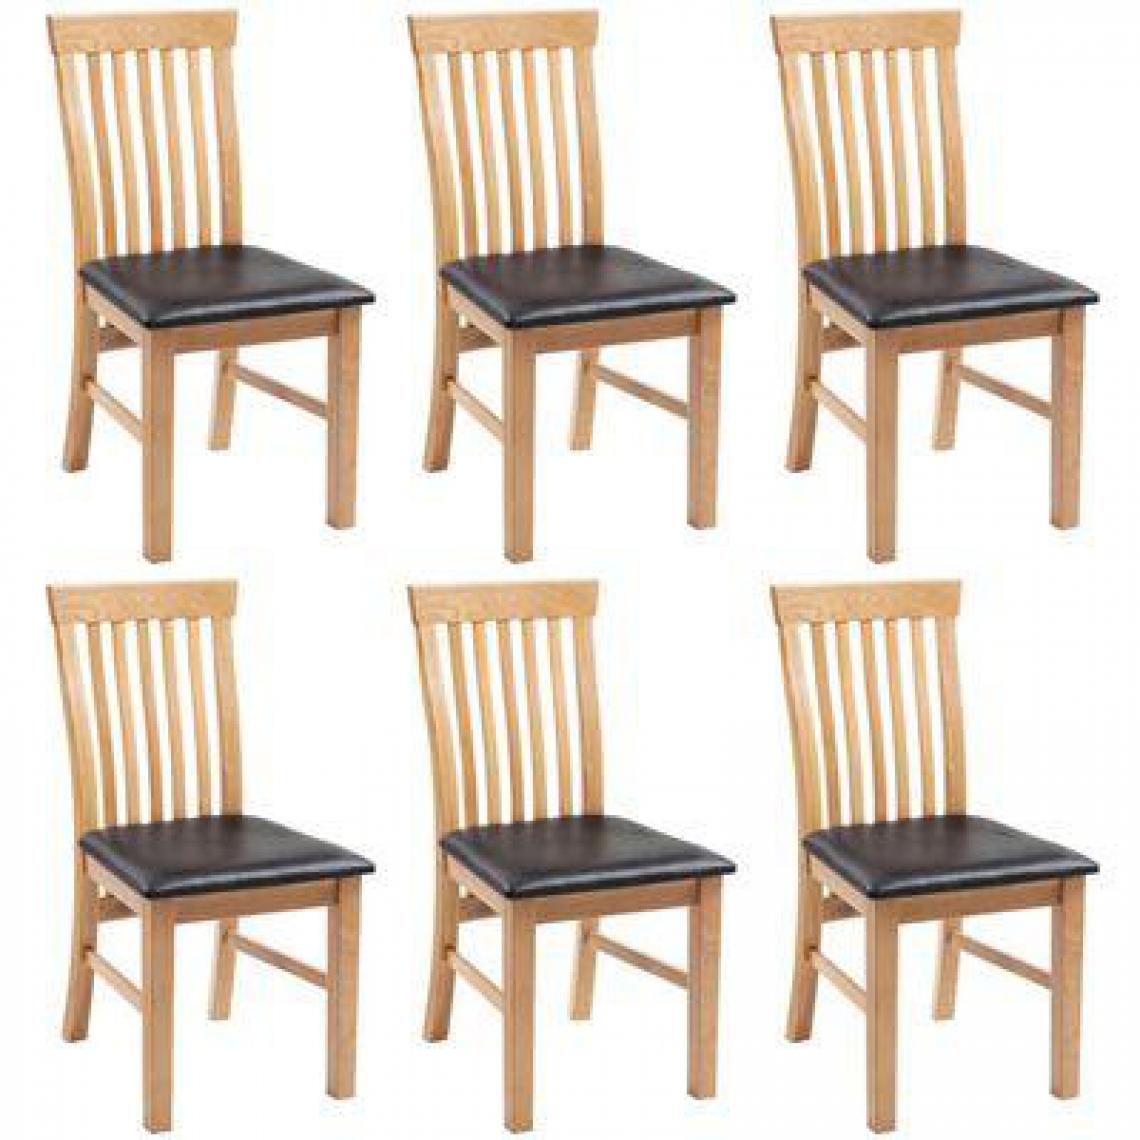 Decoshop26 - Lot de 6 chaises de salle à manger cuisine bois de chêne massif et similicuir CDS022240 - Chaises